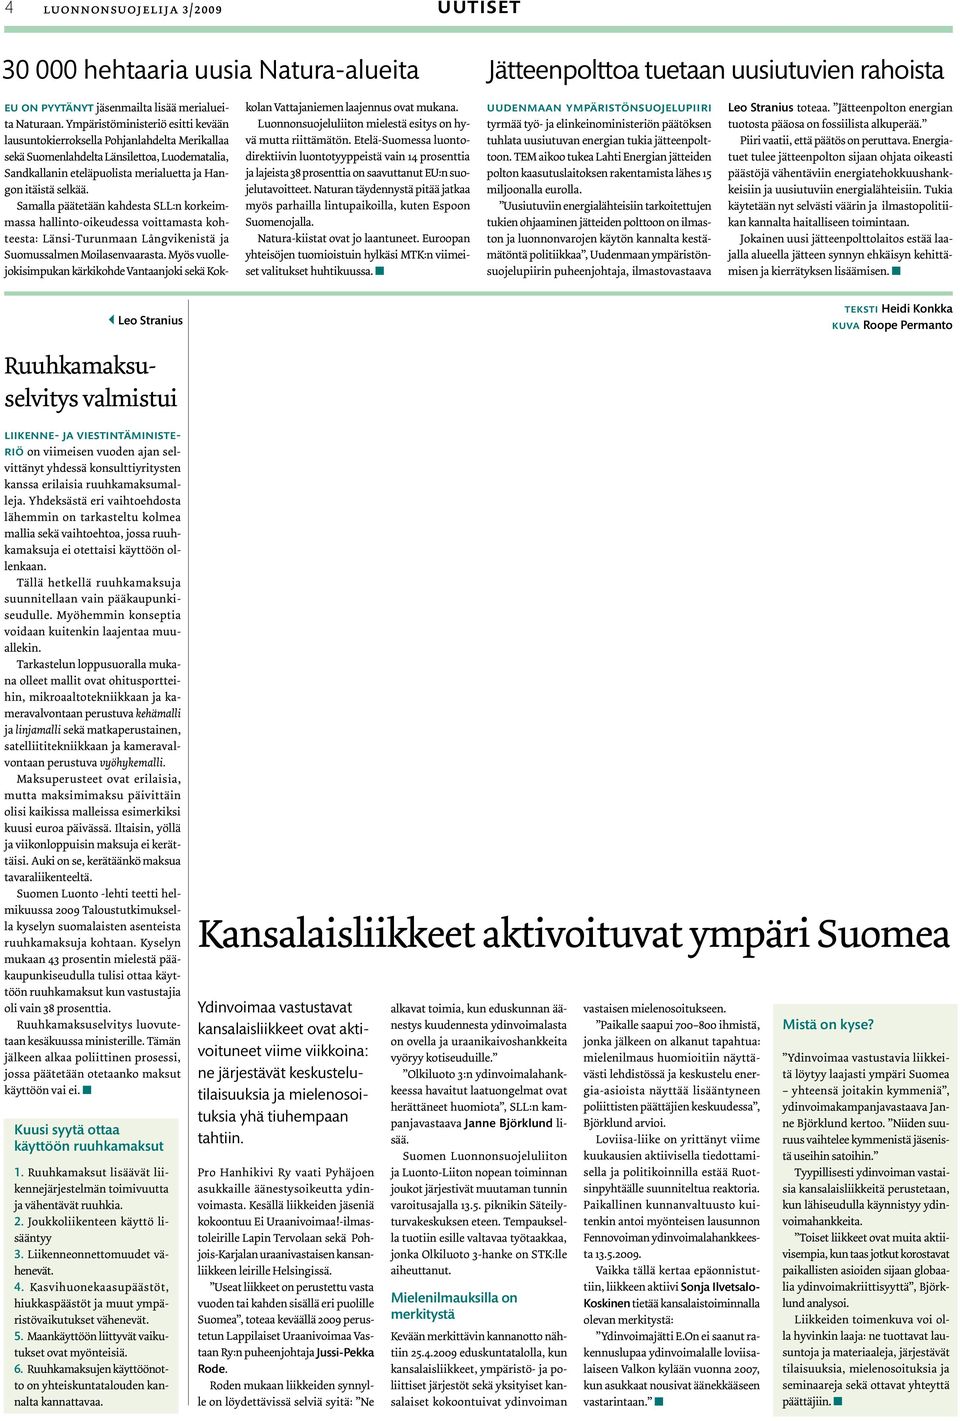 Samalla päätetään kahdesta SLL:n korkeimmassa hallinto-oikeudessa voittamasta kohteesta: Länsi-Turunmaan Långvikenistä ja Suomussalmen Moilasenvaarasta.